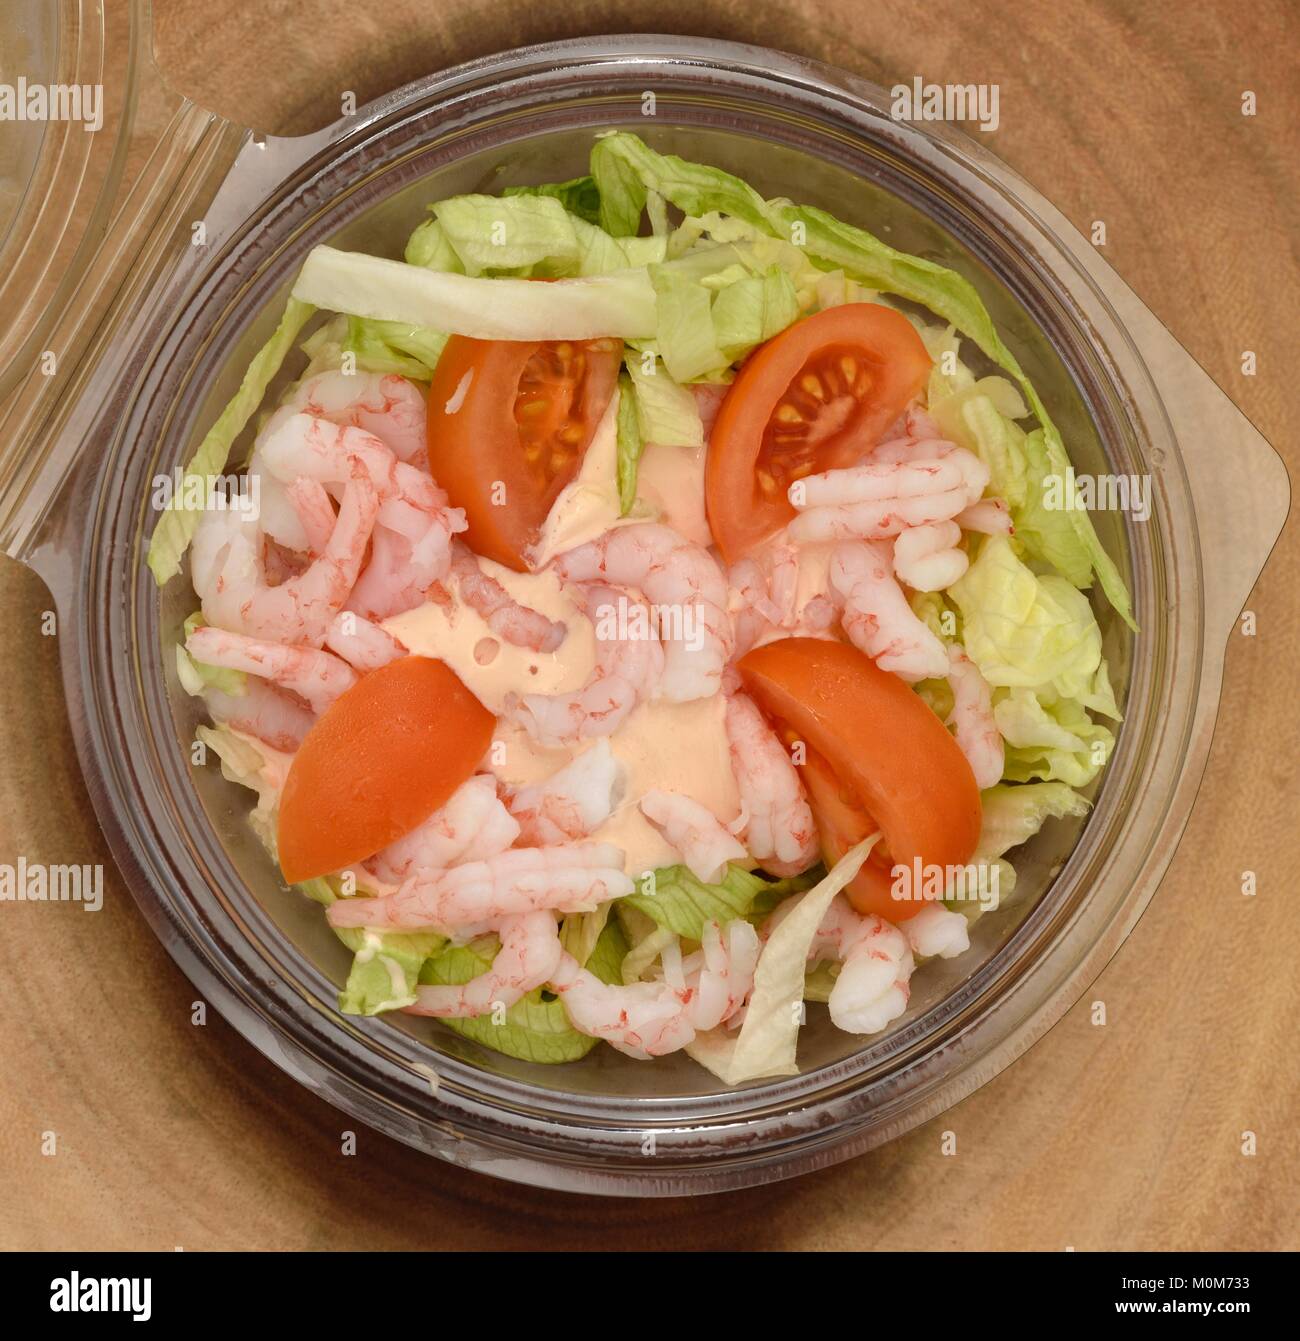 Salade de crevettes dans le plateau en plastique Banque D'Images